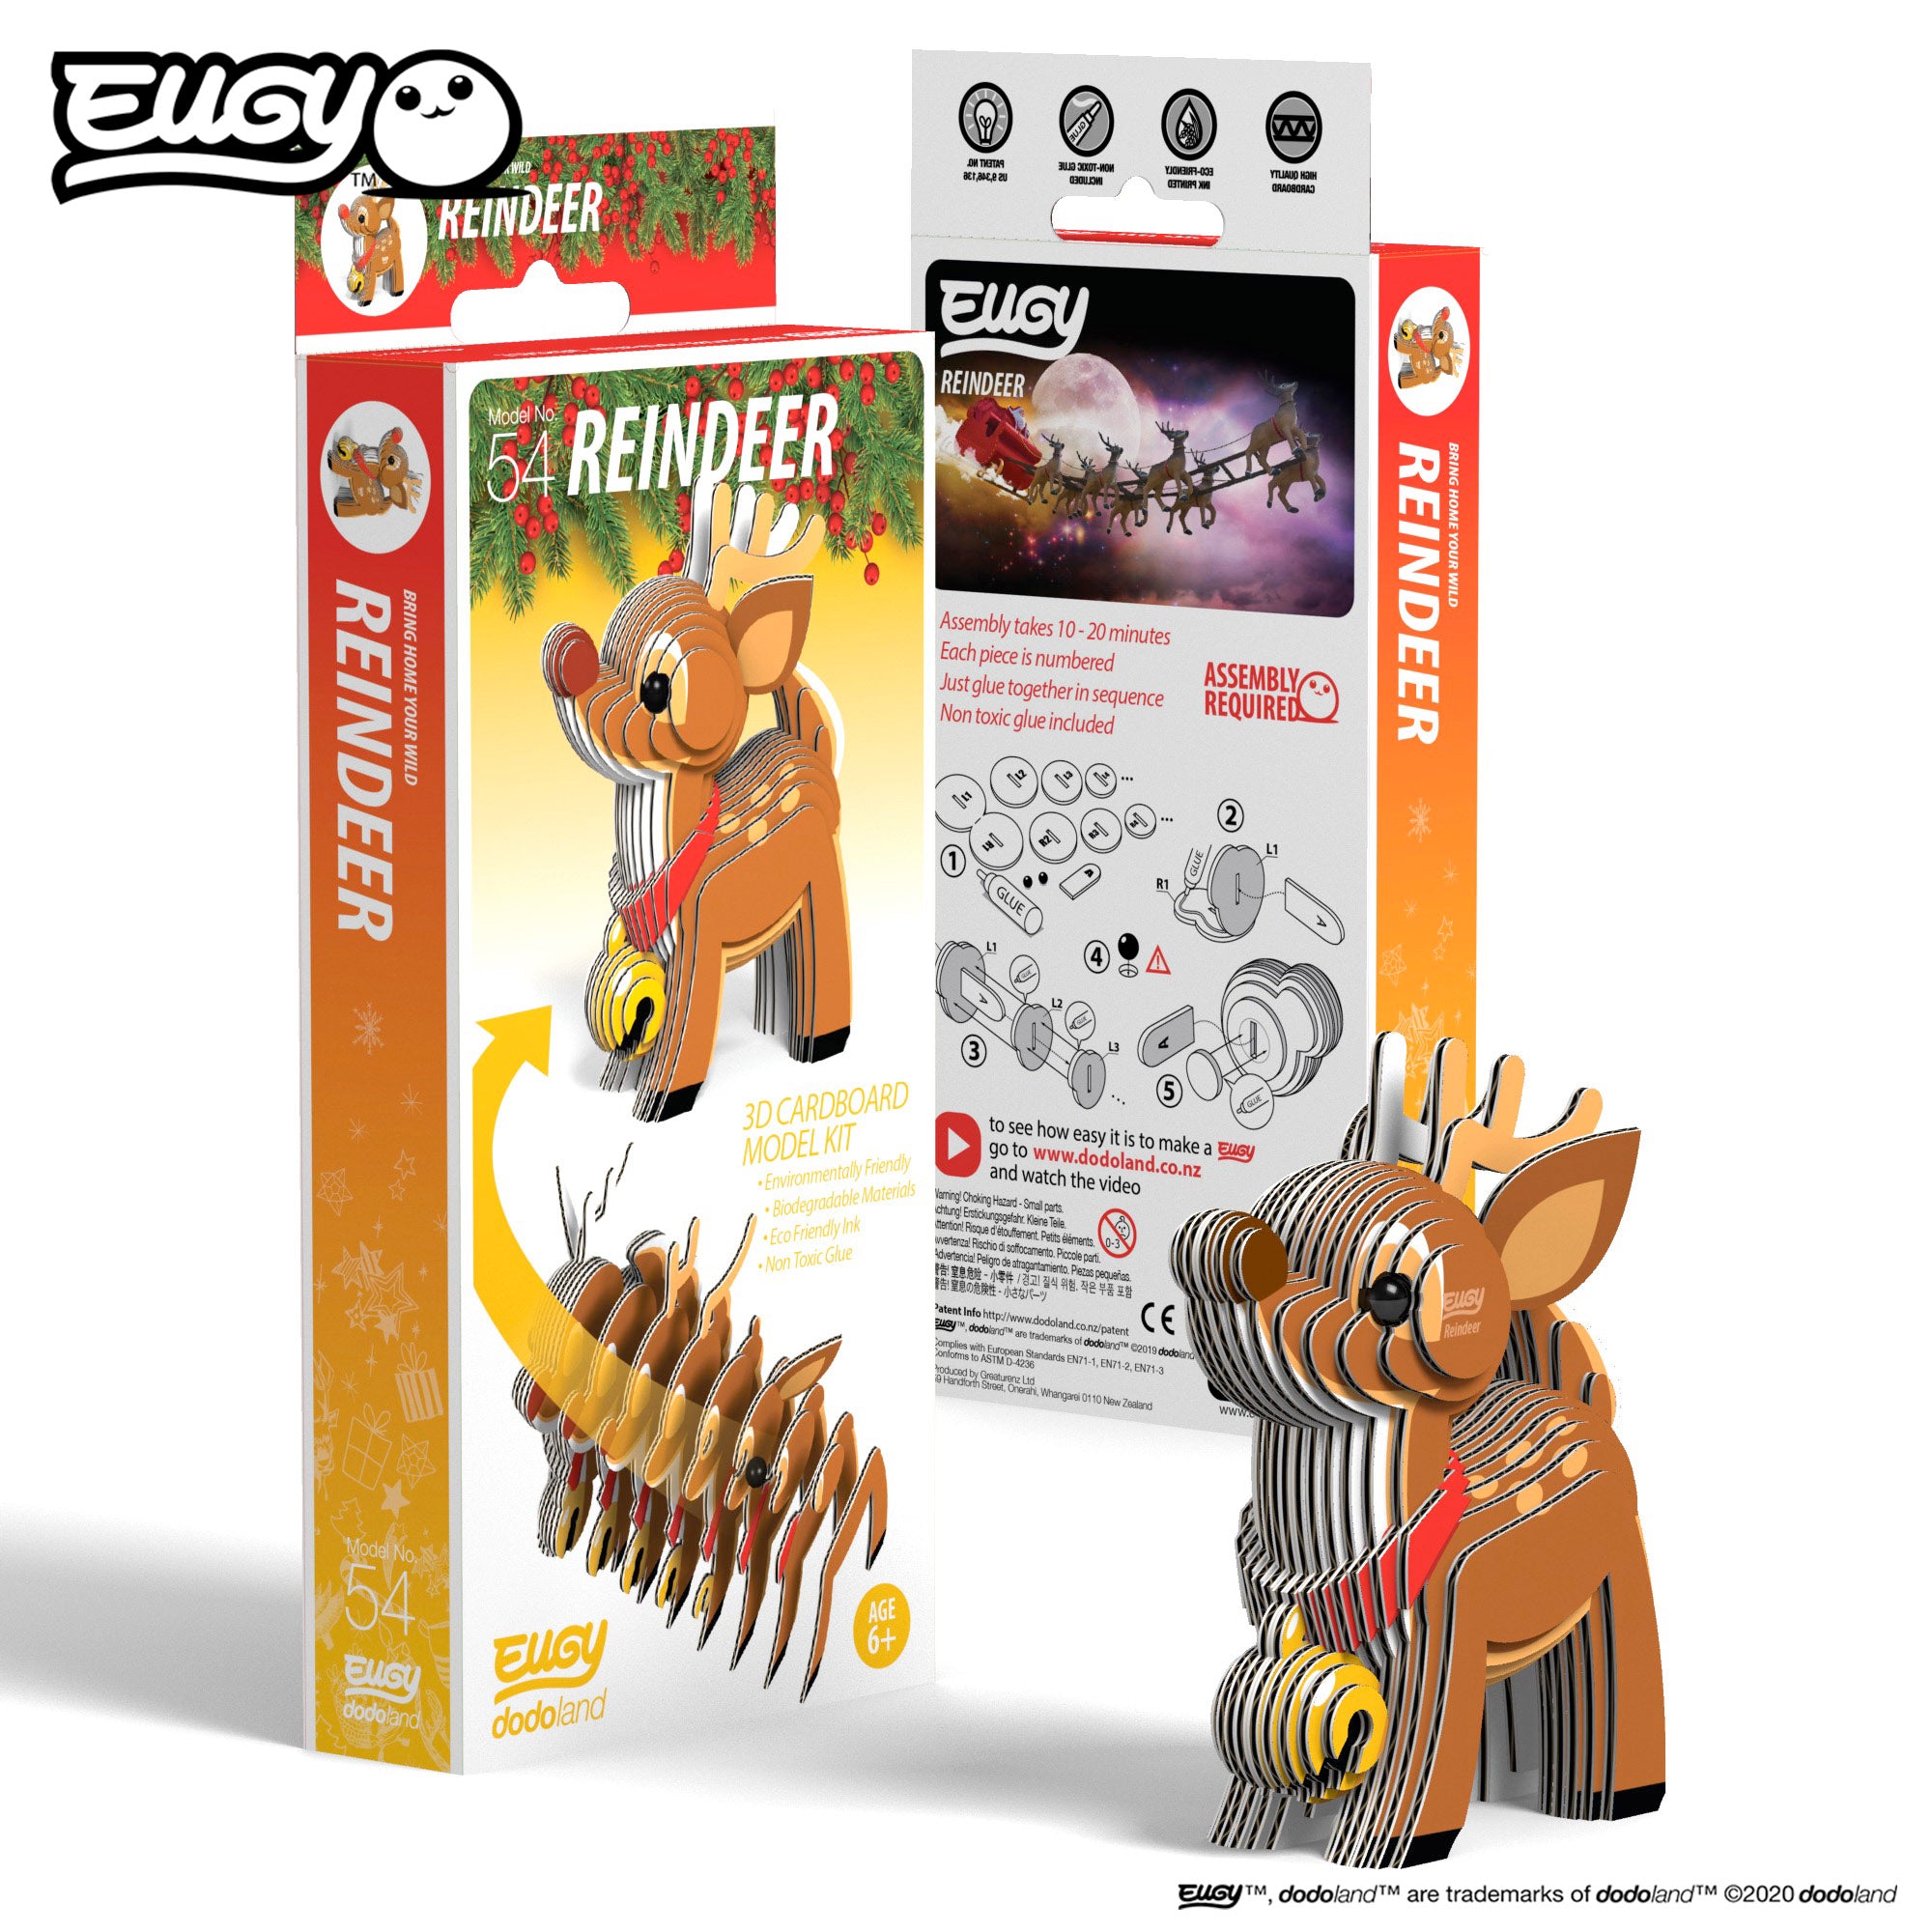 EUGY Reindeer - 3D Cardboard Model Kit, box & reindeer view